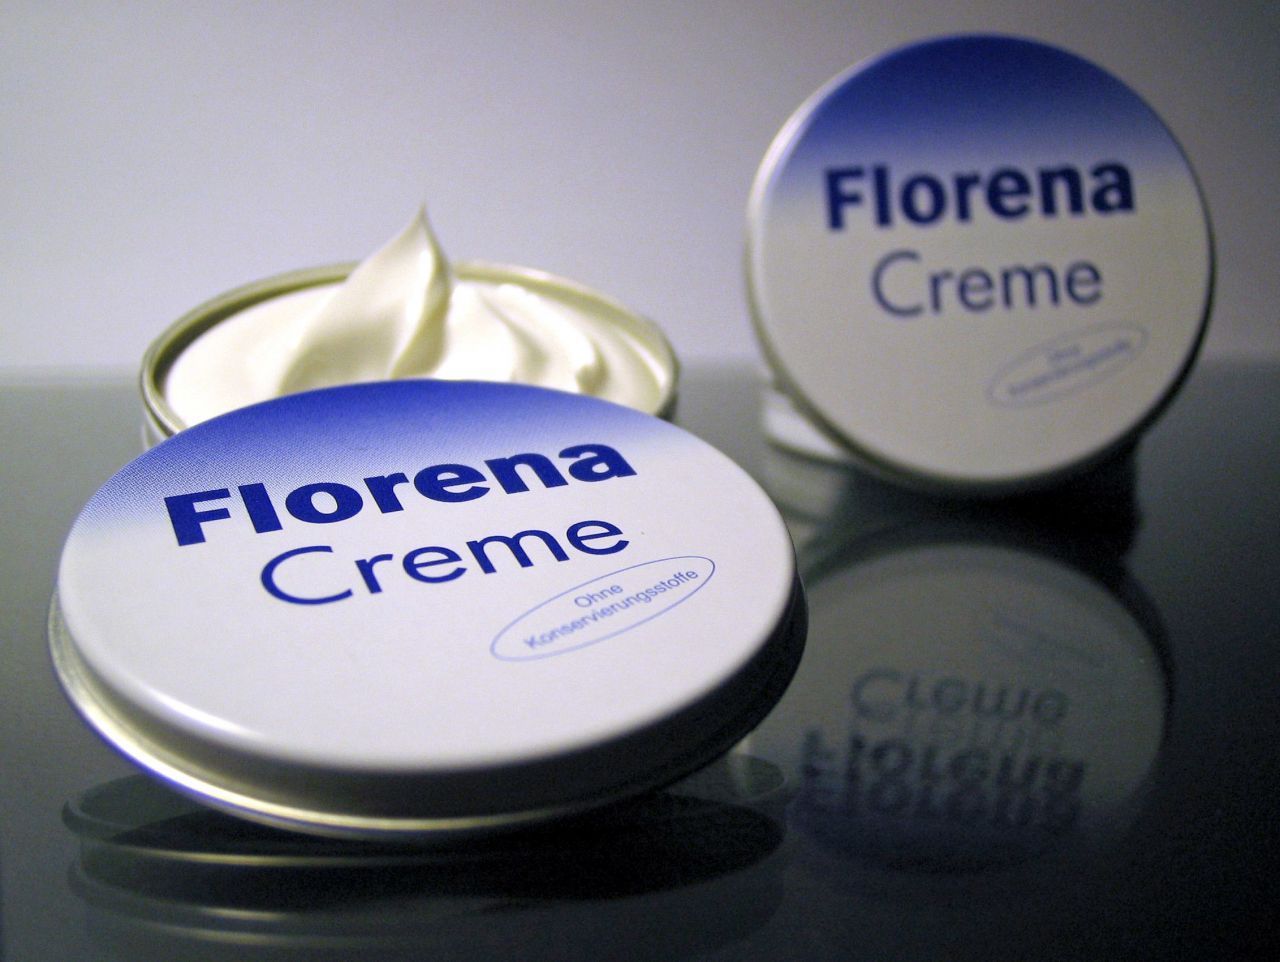 Florena war die Nivea des Ostens. Die Creme überlebte nicht nur die Deutsche Wiedervereinigung. Seit 2002 gehört sie sogar zu Beiersdorf, Hersteller des einstigen Konkurrenz-Produktes.